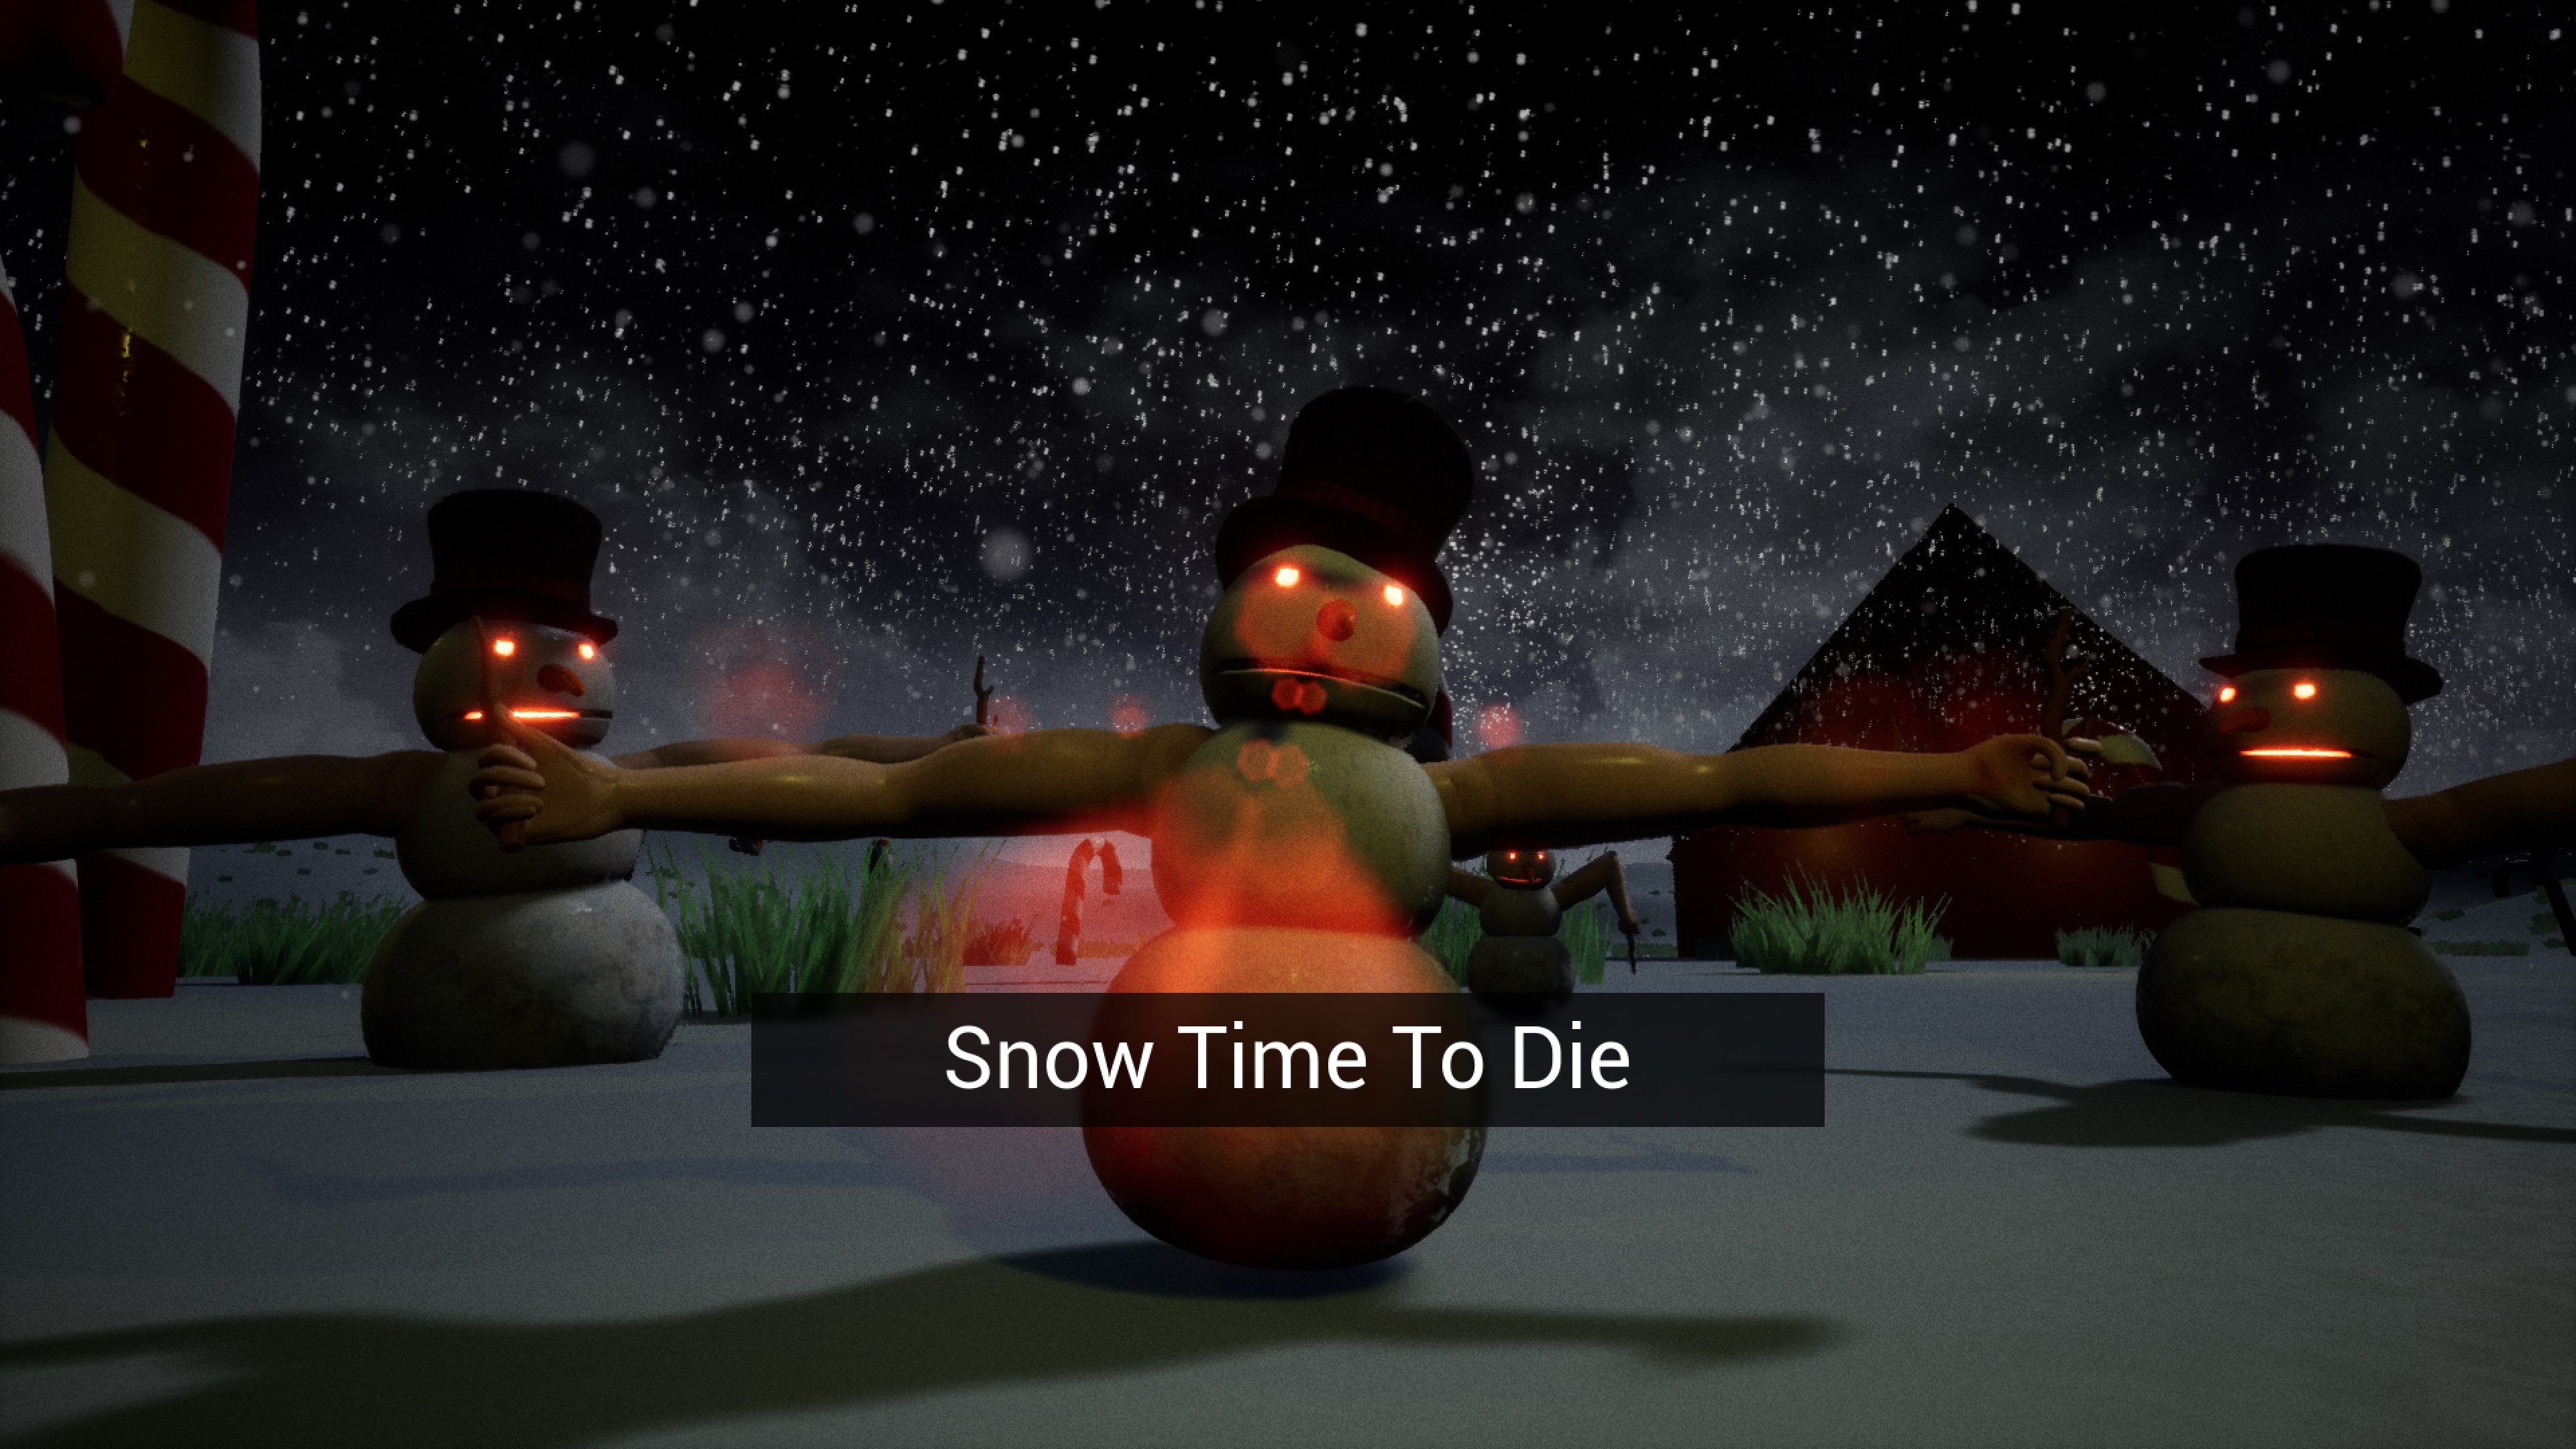 Snow Time To Die